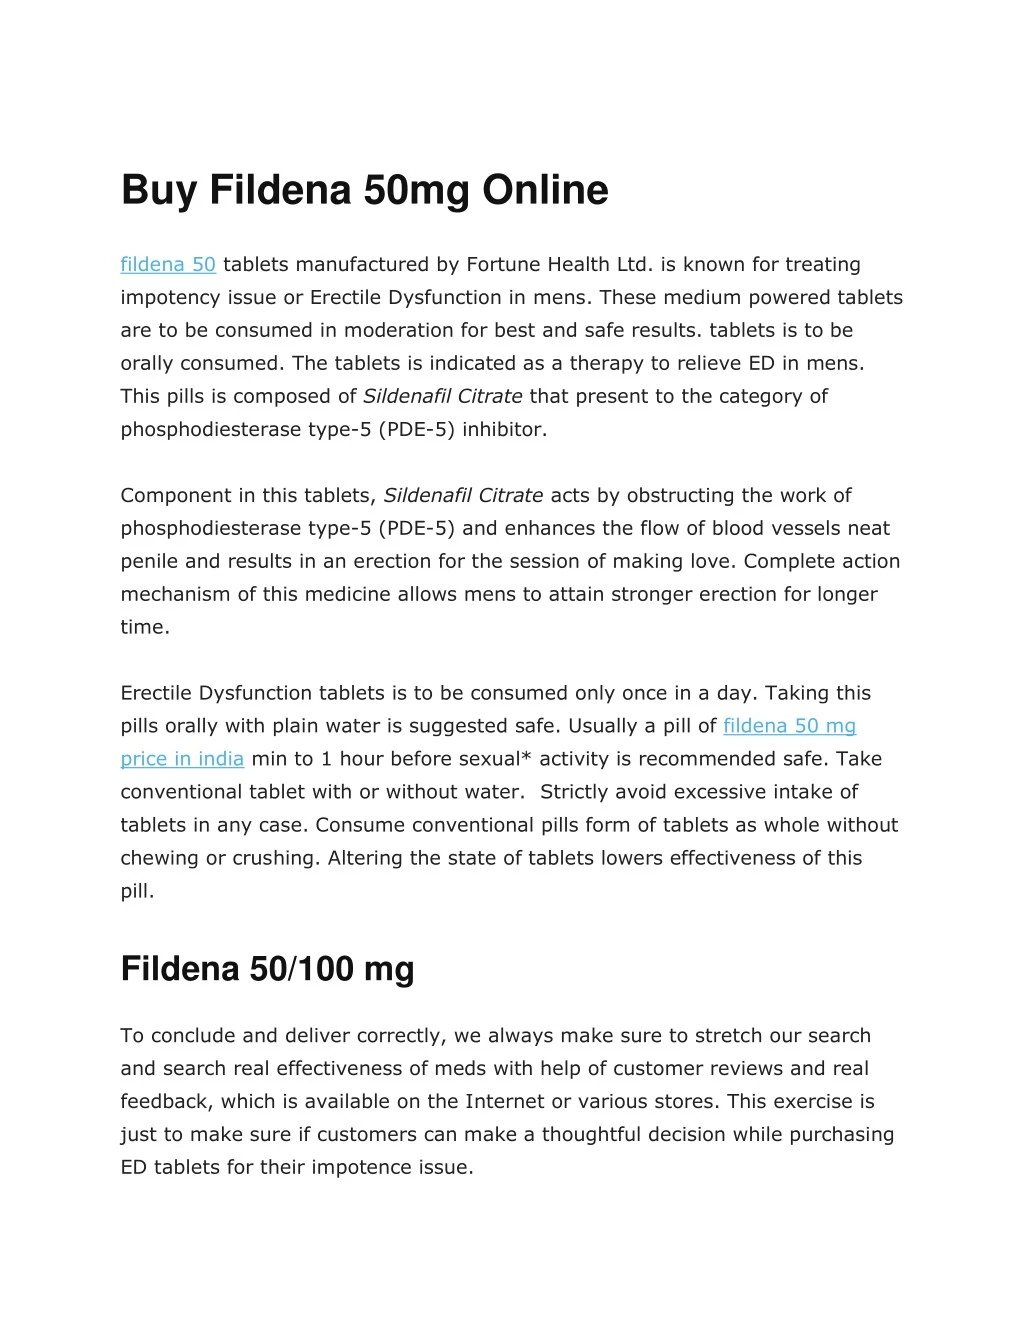 buy fildena 50mg online